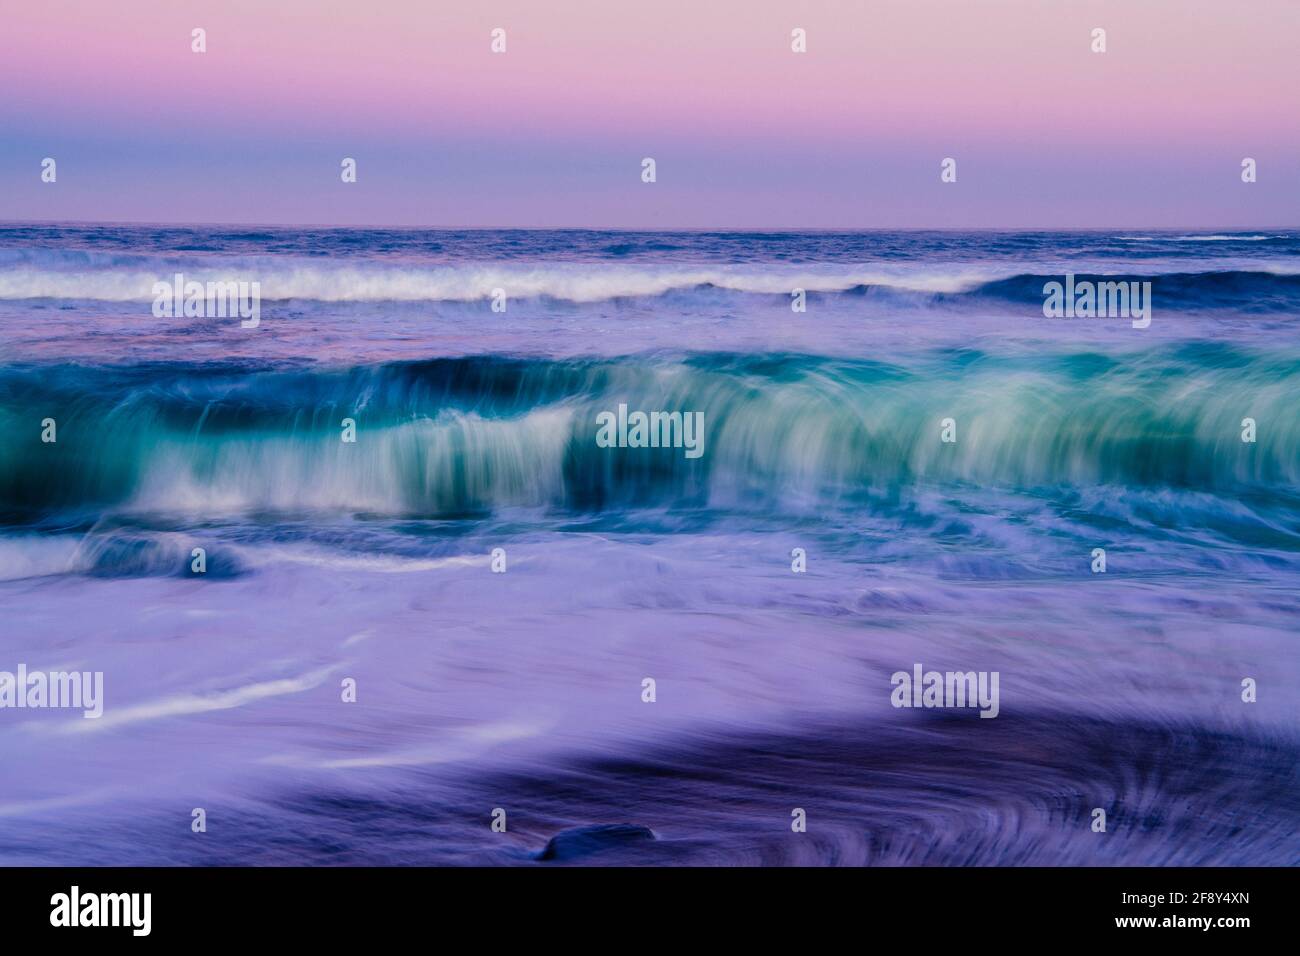 Exposición prolongada de olas rompiendo en la playa, Fort Bragg, California, Estados Unidos Foto de stock